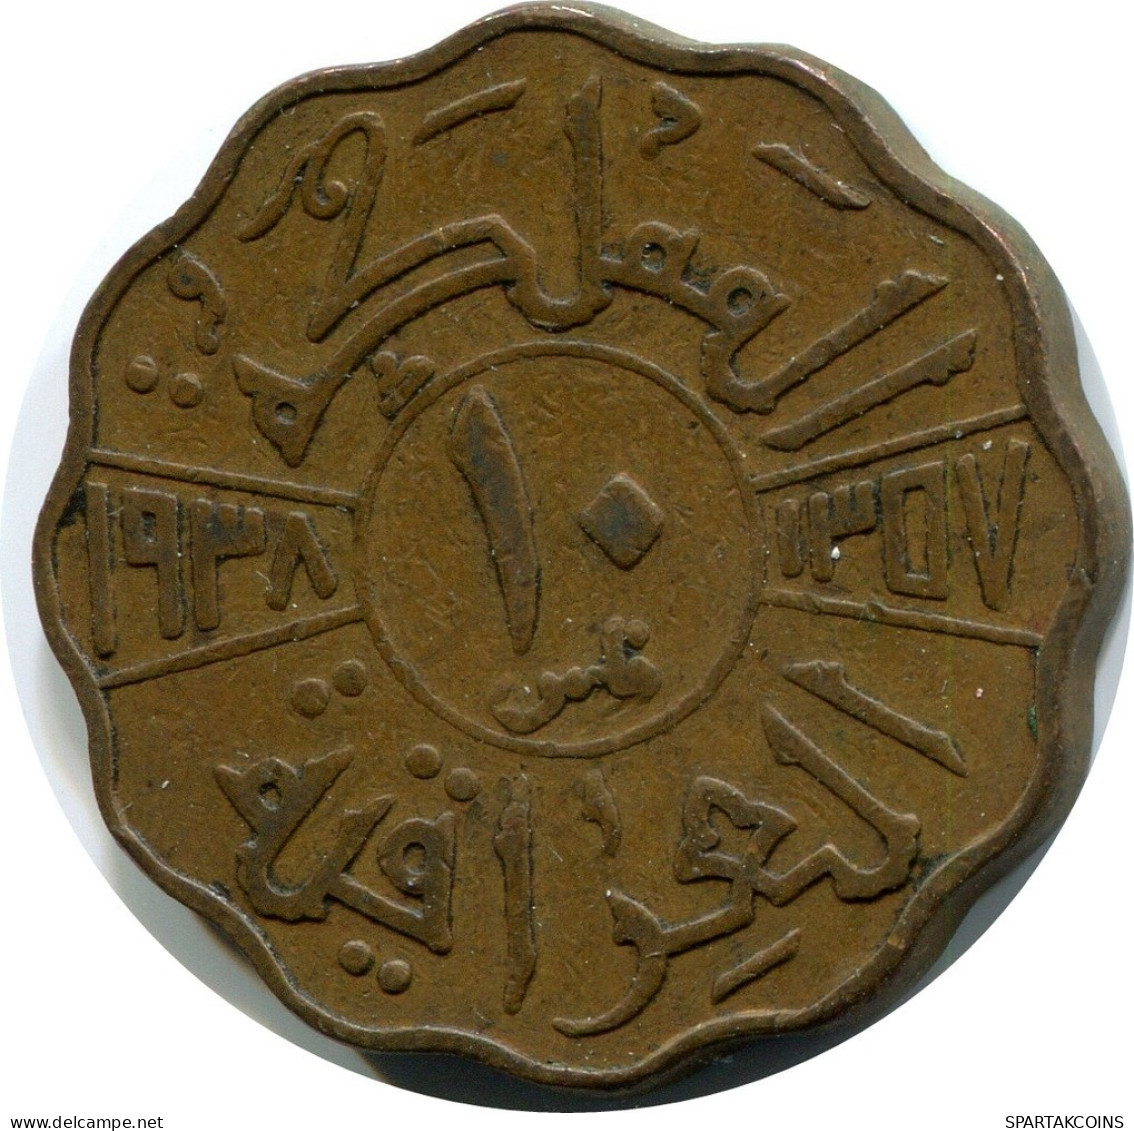 10 FILS 1938 IRAQ Islamic Coin #AY944.U.A - Irak